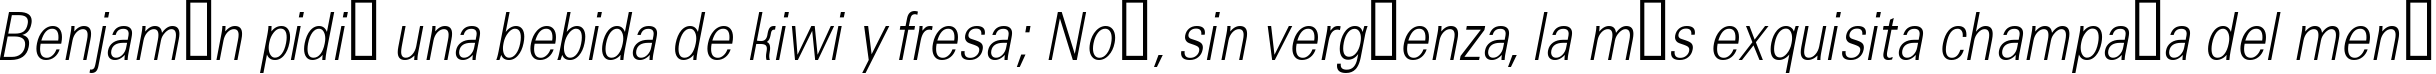 Пример написания шрифтом a_GroticLtNr Italic текста на испанском